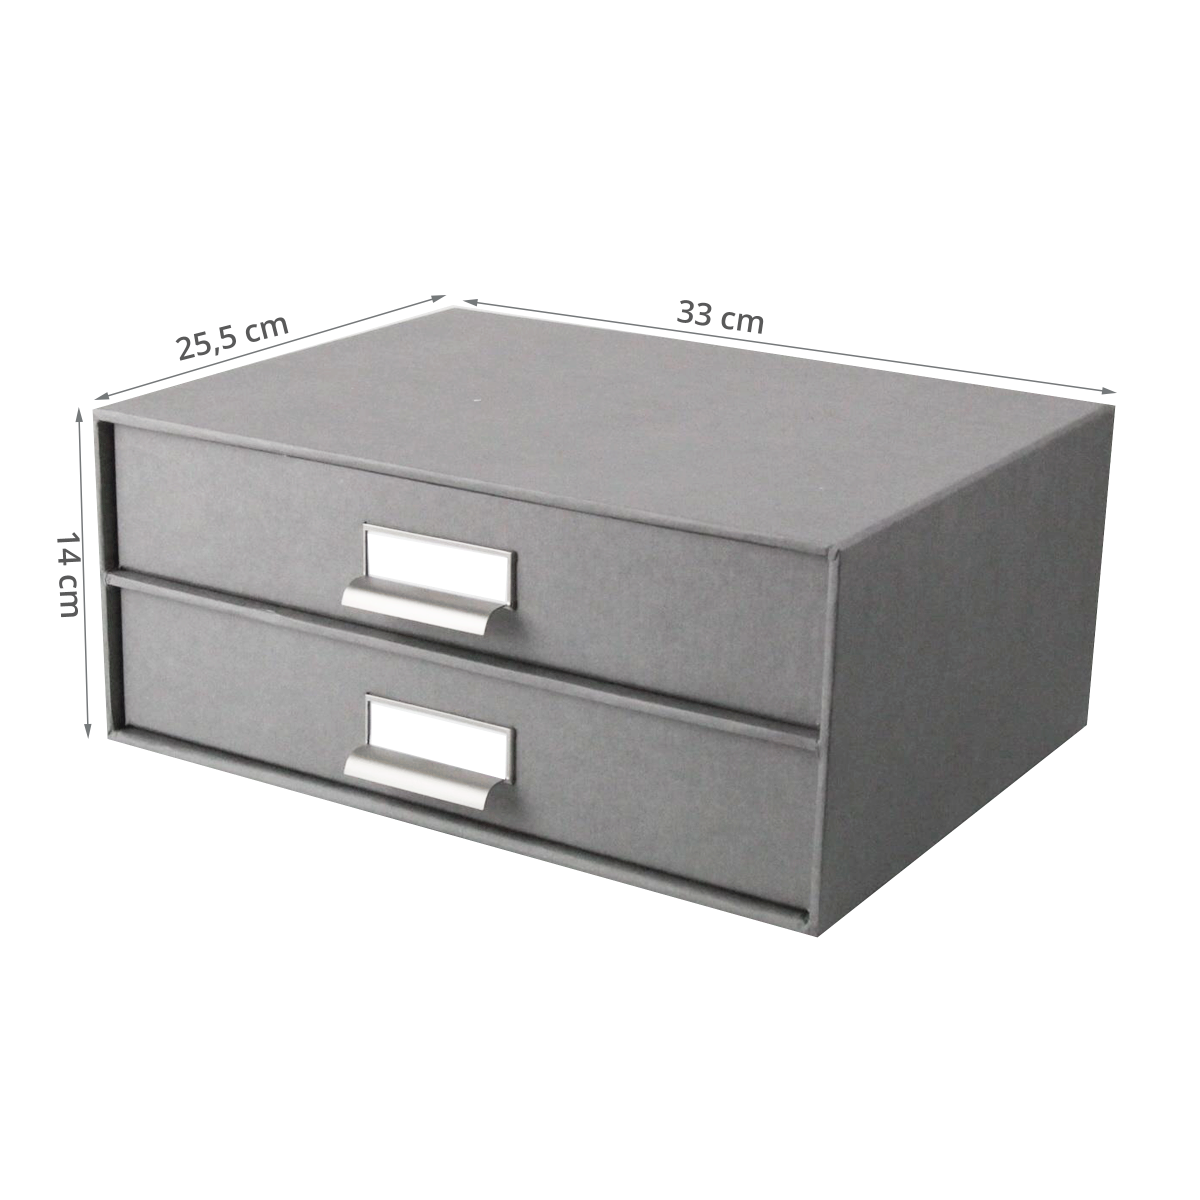 Boîte de rangement 14x33x25cm avec 2 tiroirs en carton et cuir gris